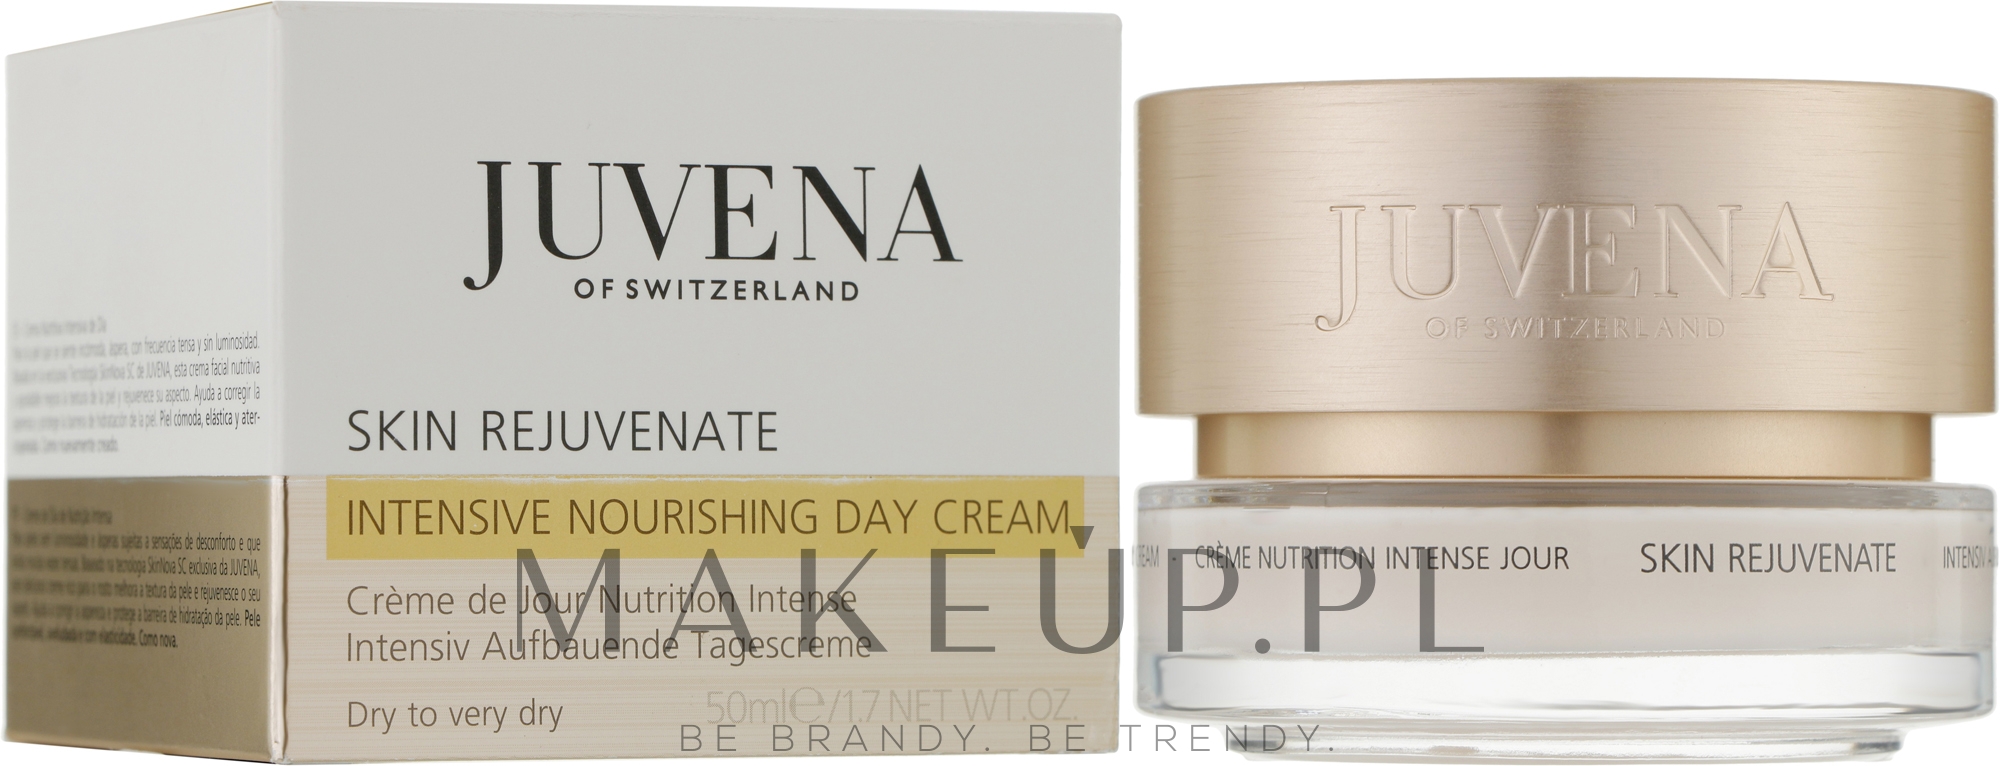 Odmładzający krem na dzień intensywnie odżywiający skórę twarzy - Juvena Skin Rejuvenate Intensive Nourishing Day Cream — Zdjęcie 50 ml